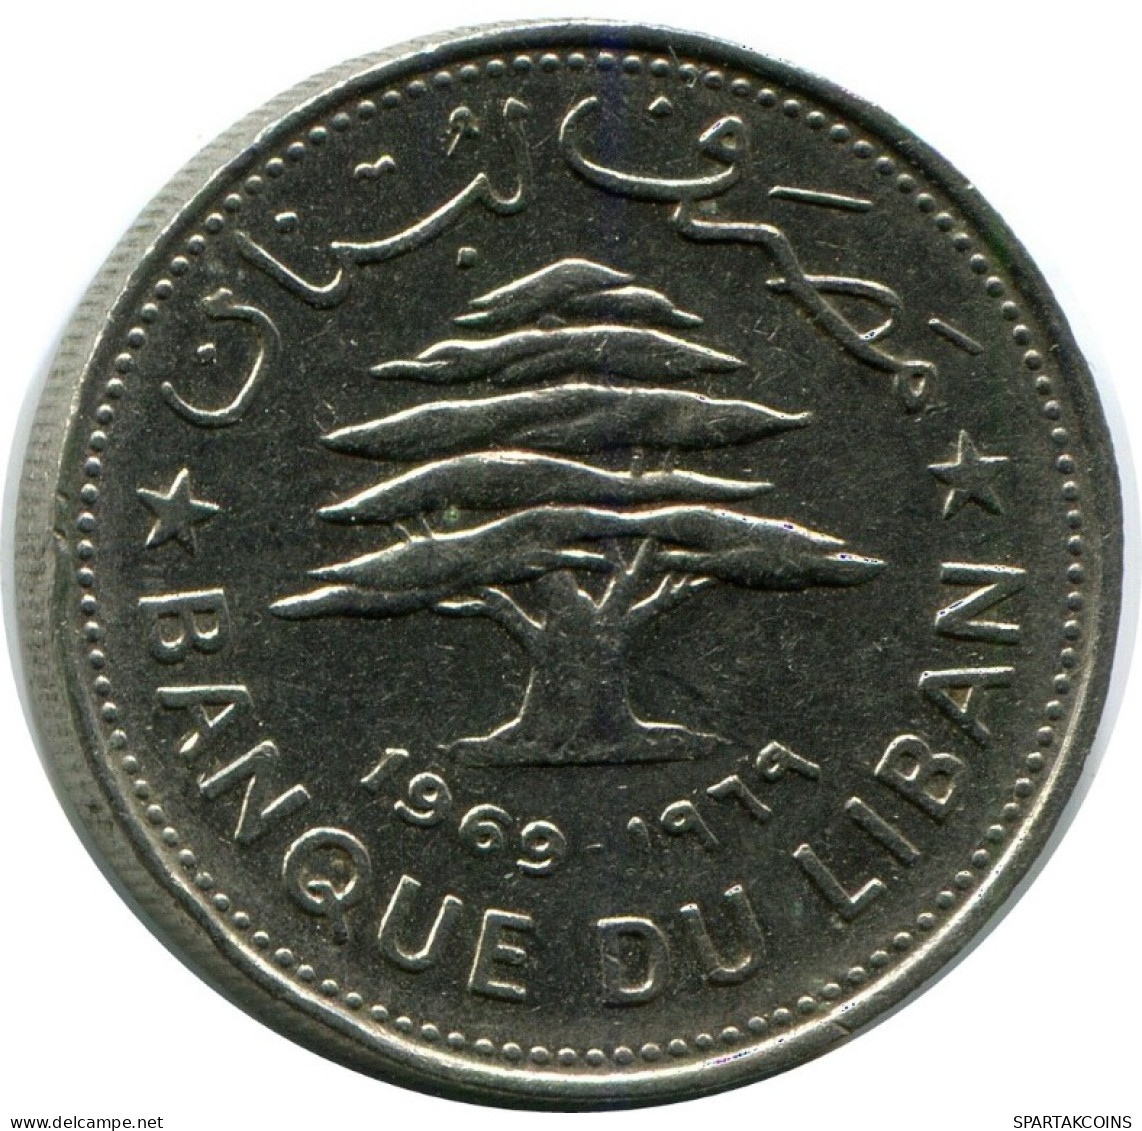 50 PIASTRES 1969 LEBANON Coin #AH784.U.A - Liban